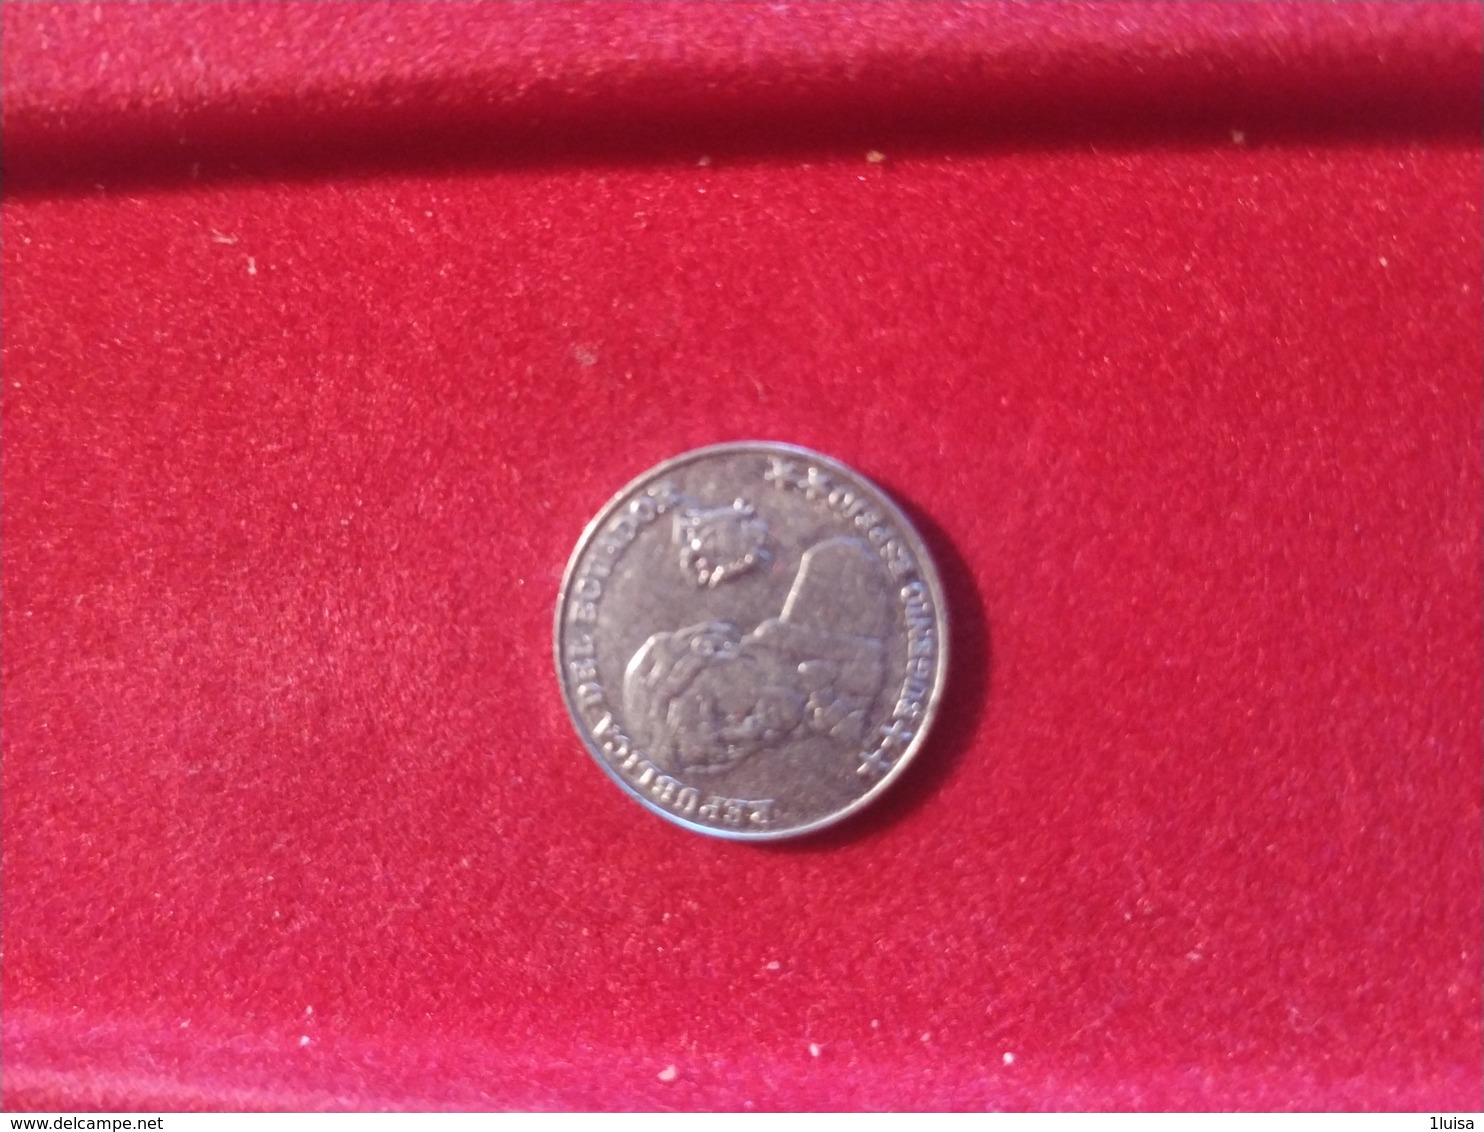 Equador 10 Centavos  2000 - Equateur